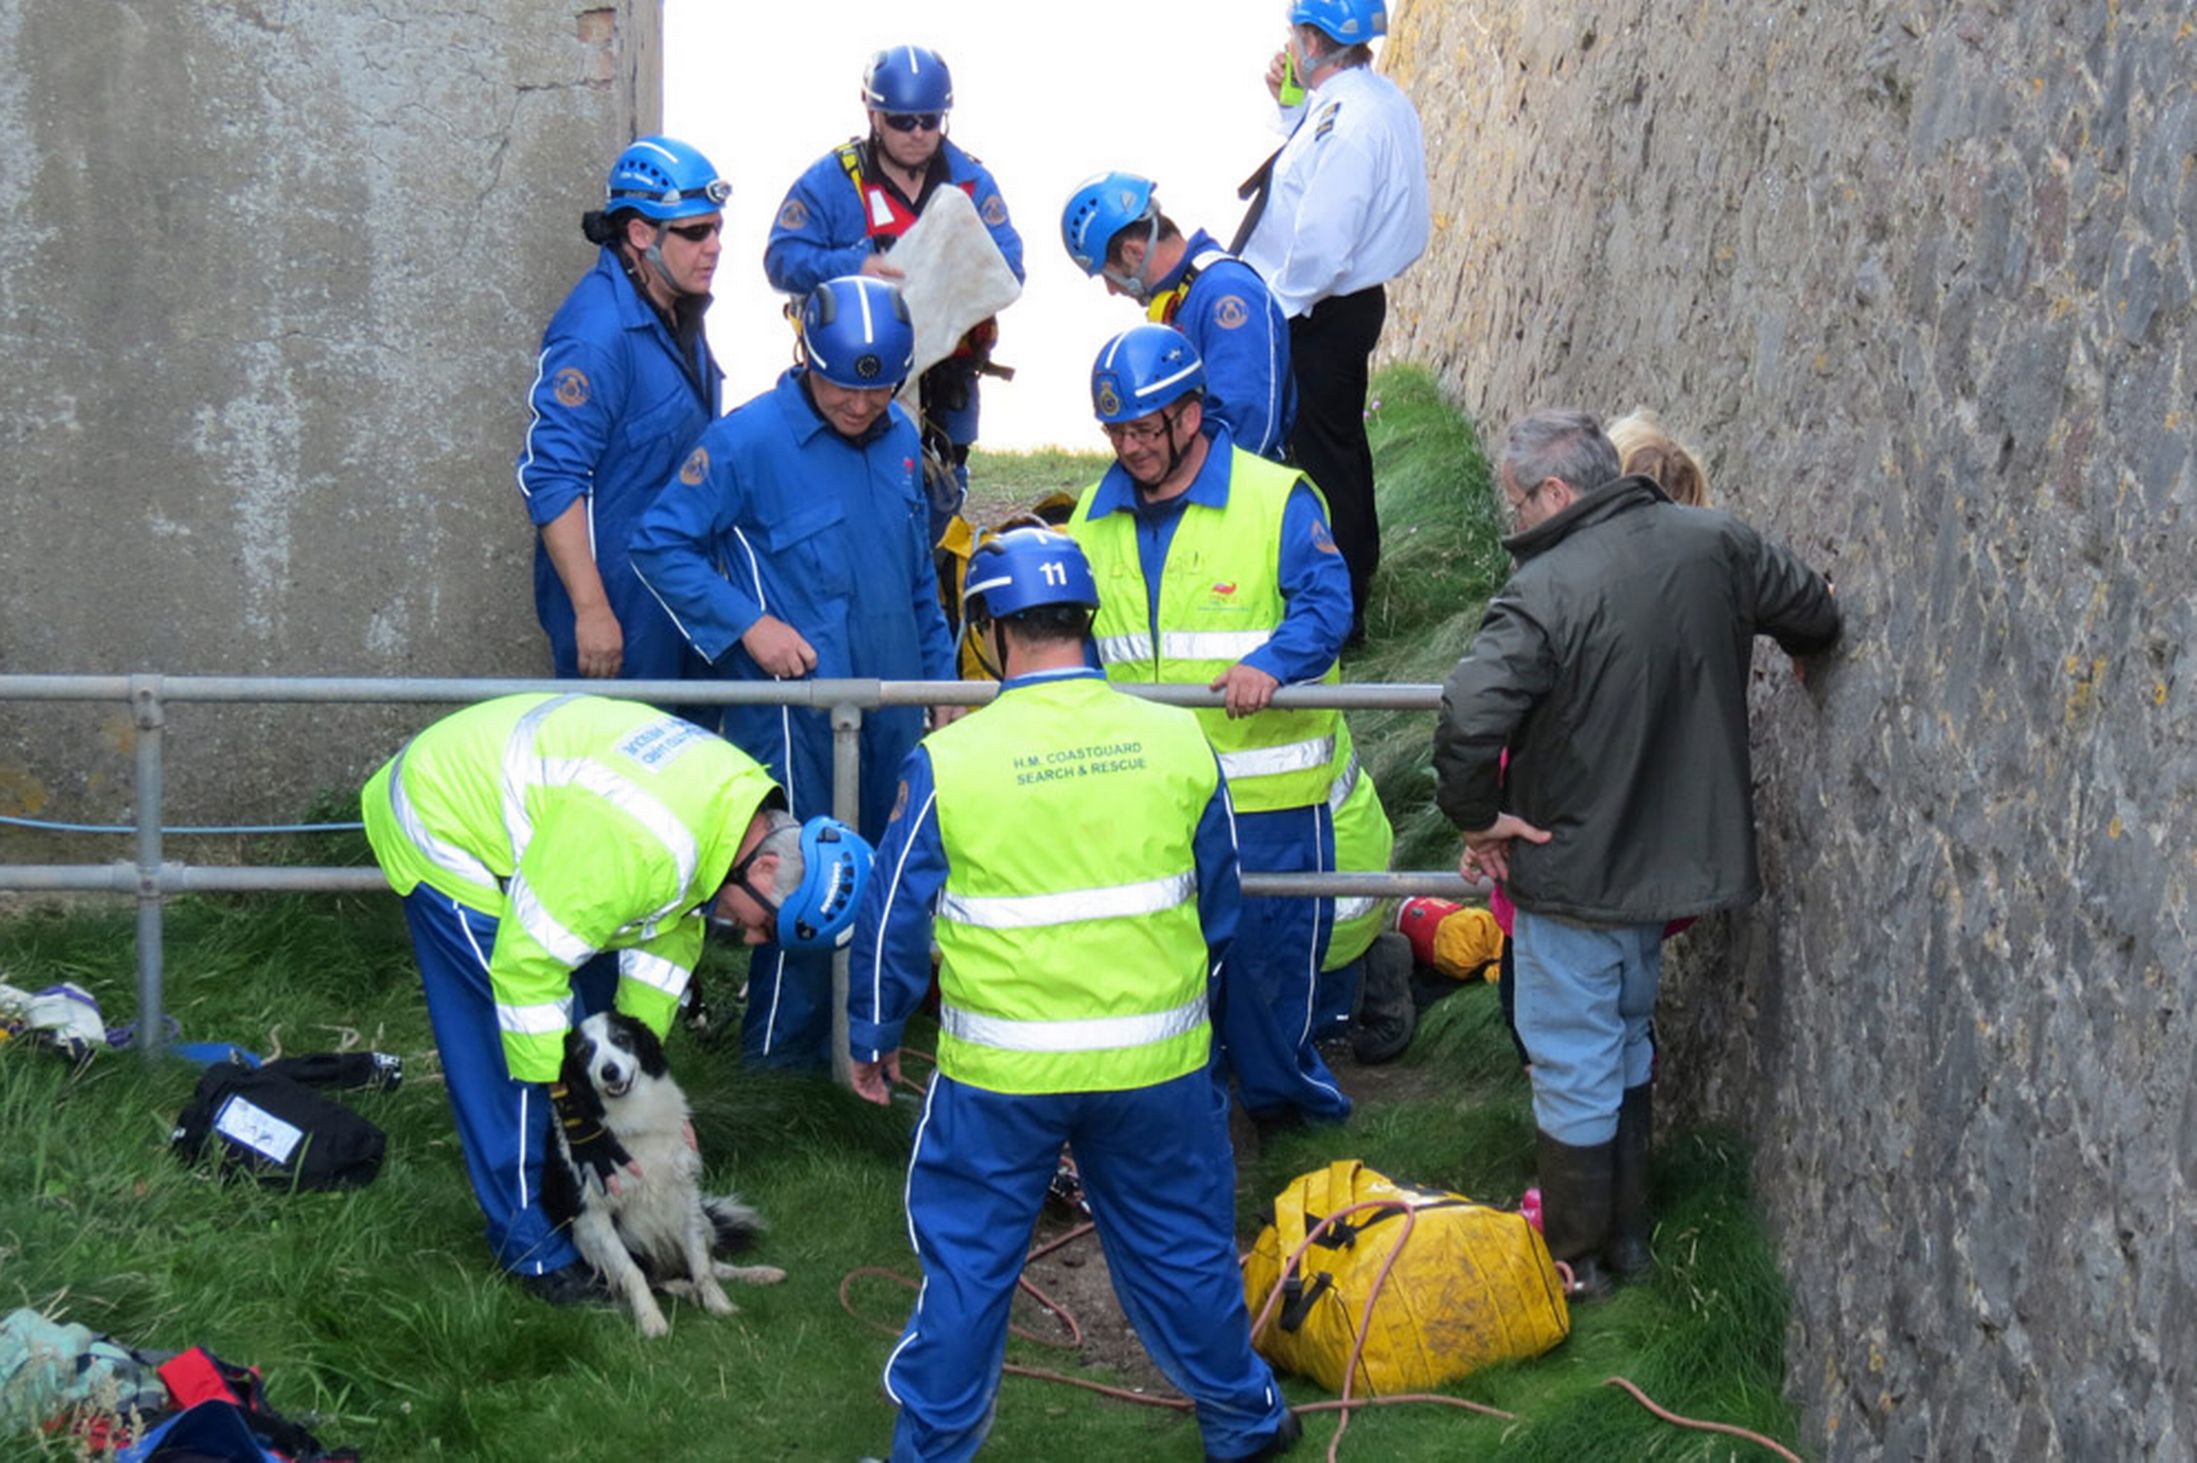 Coastguard Rescues Stranded Dog On Rocks